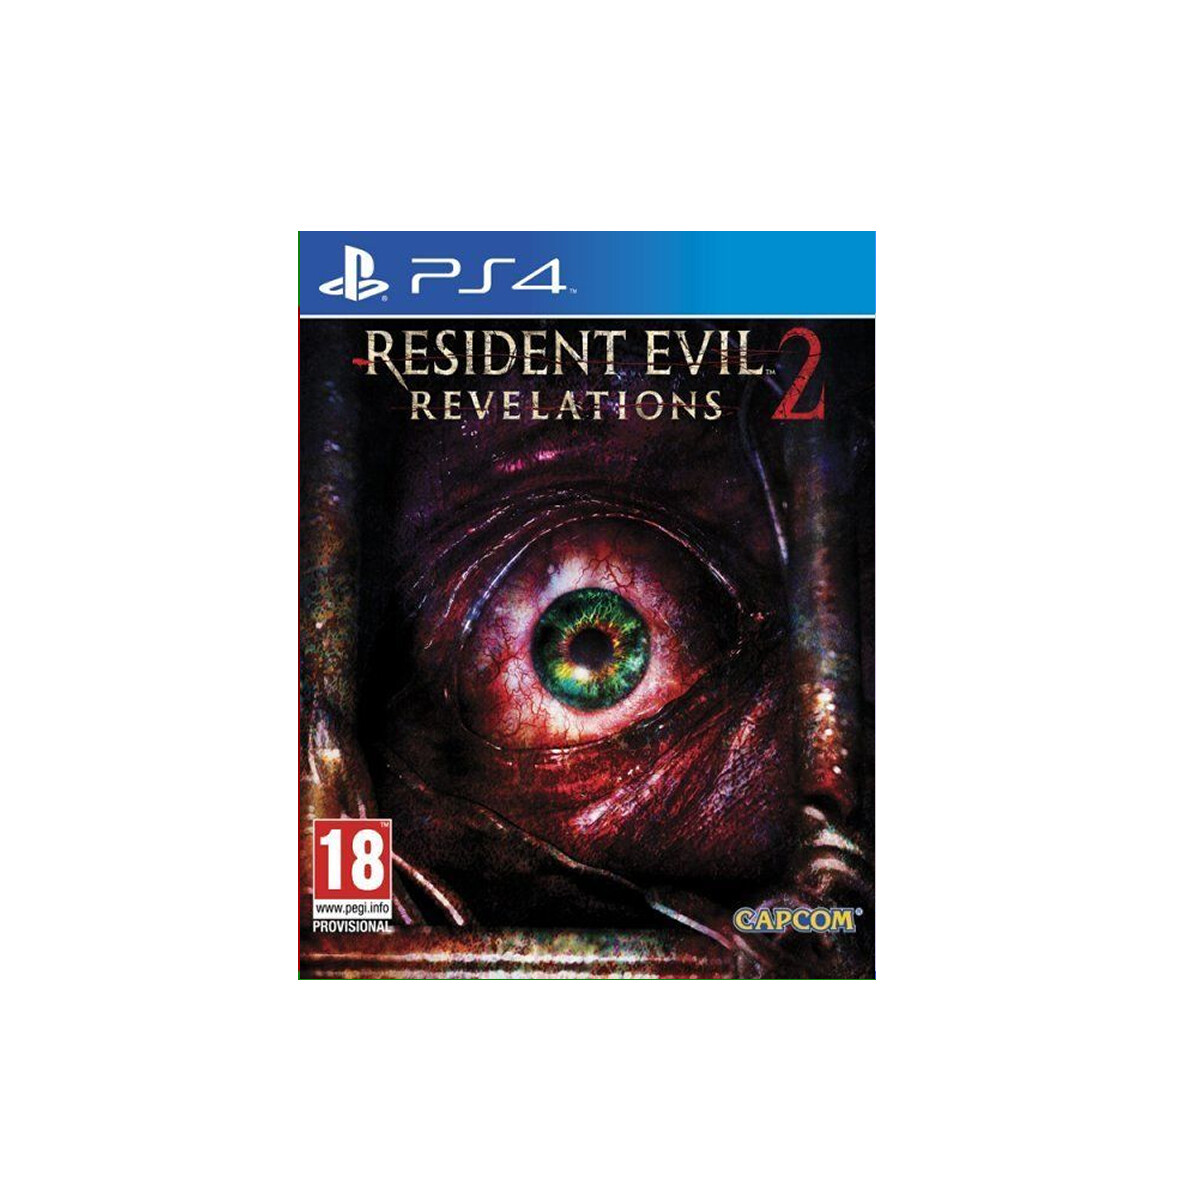 PS4 RESIDENT EVIL: REVELATIONS 2 